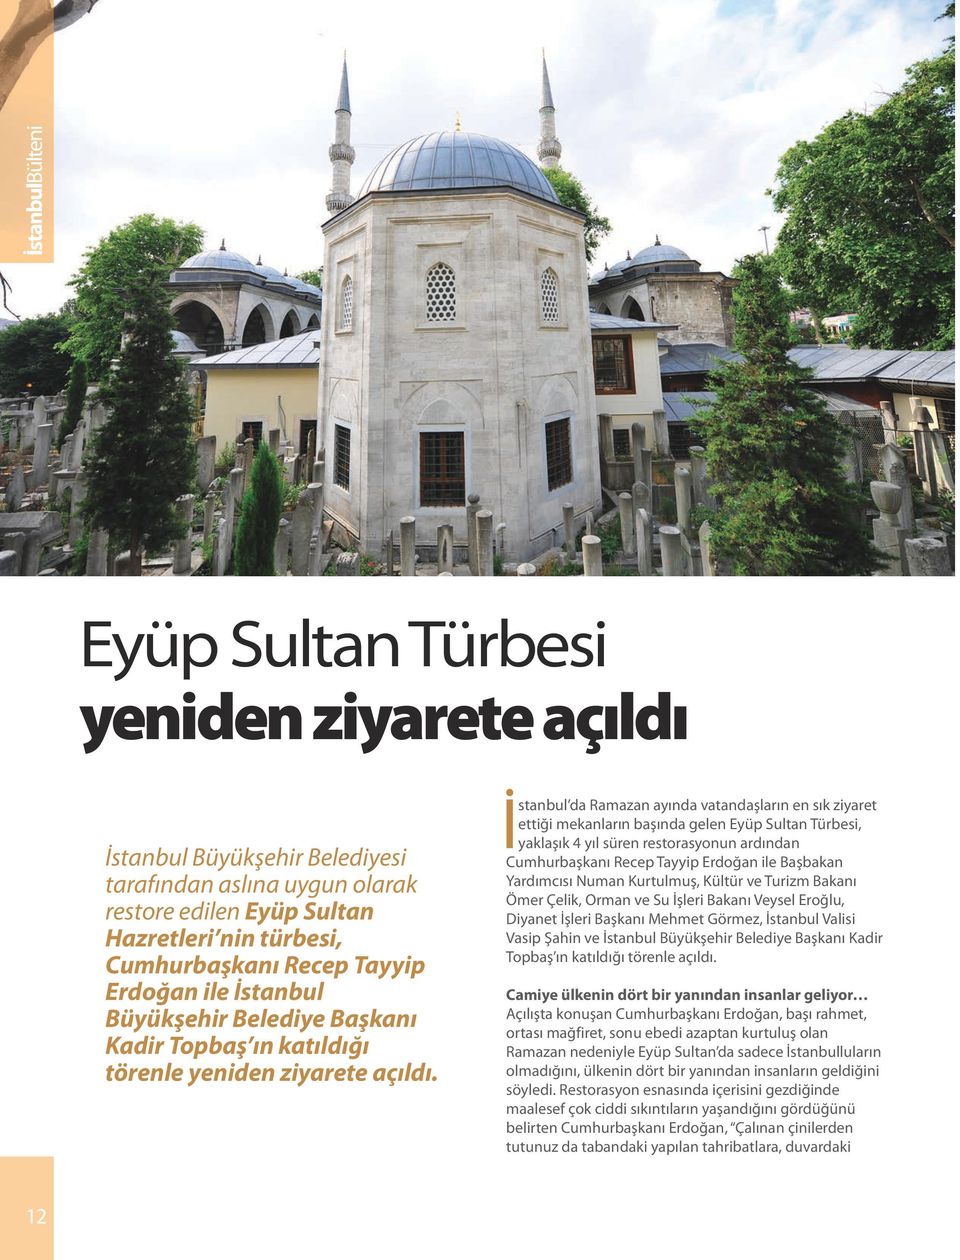 İstanbul da Ramazan ayında vatandaşların en sık ziyaret ettiği mekanların başında gelen Eyüp Sultan Türbesi, yaklaşık 4 yıl süren restorasyonun ardından Cumhurbaşkanı Recep Tayyip Erdoğan ile